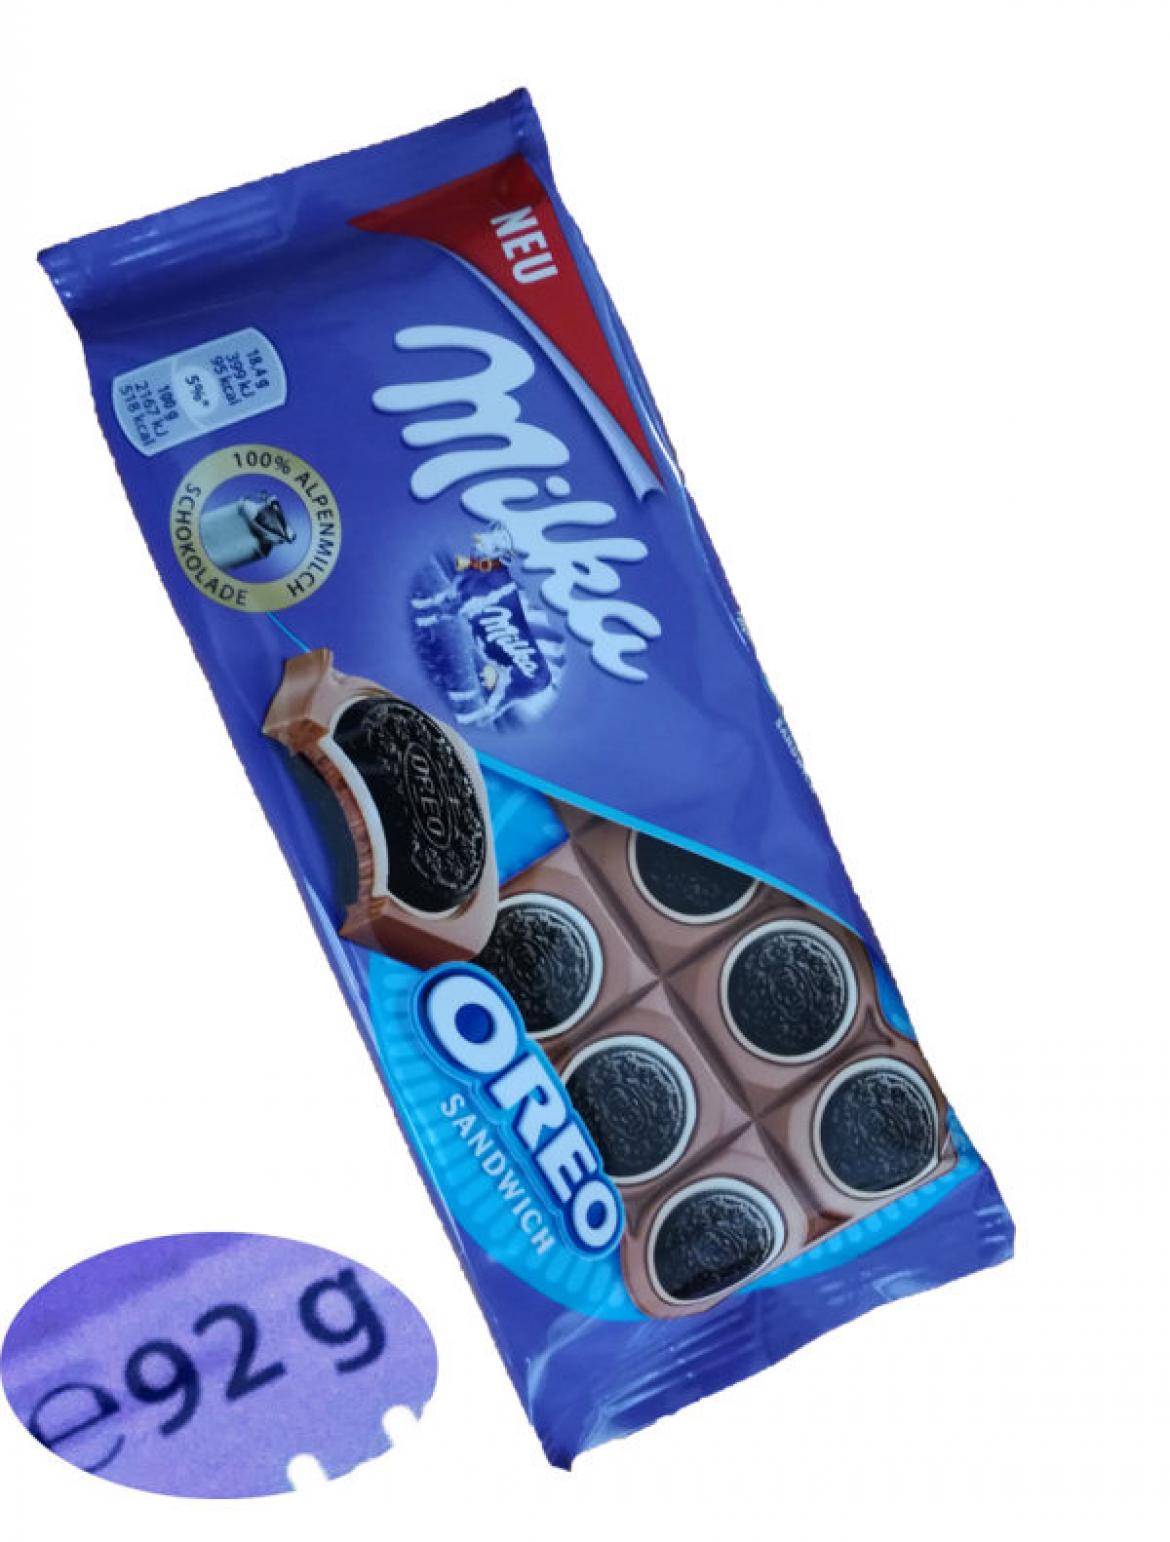 Milka: Immer weniger Schokolade pro Tafel | Verbraucherzentrale Hamburg